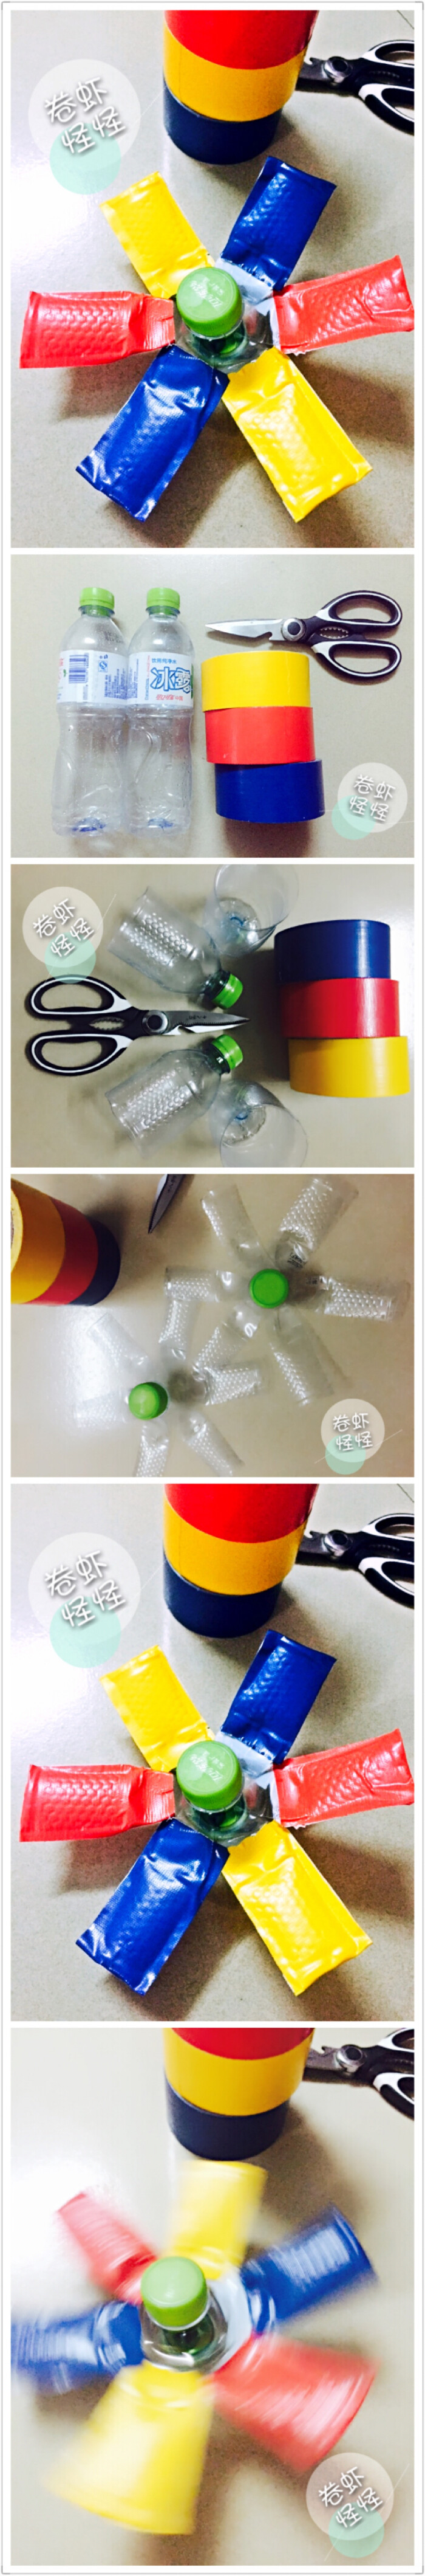 废物利用#矿泉水空瓶制作的彩色陀螺 旋转陀螺.孩子玩 